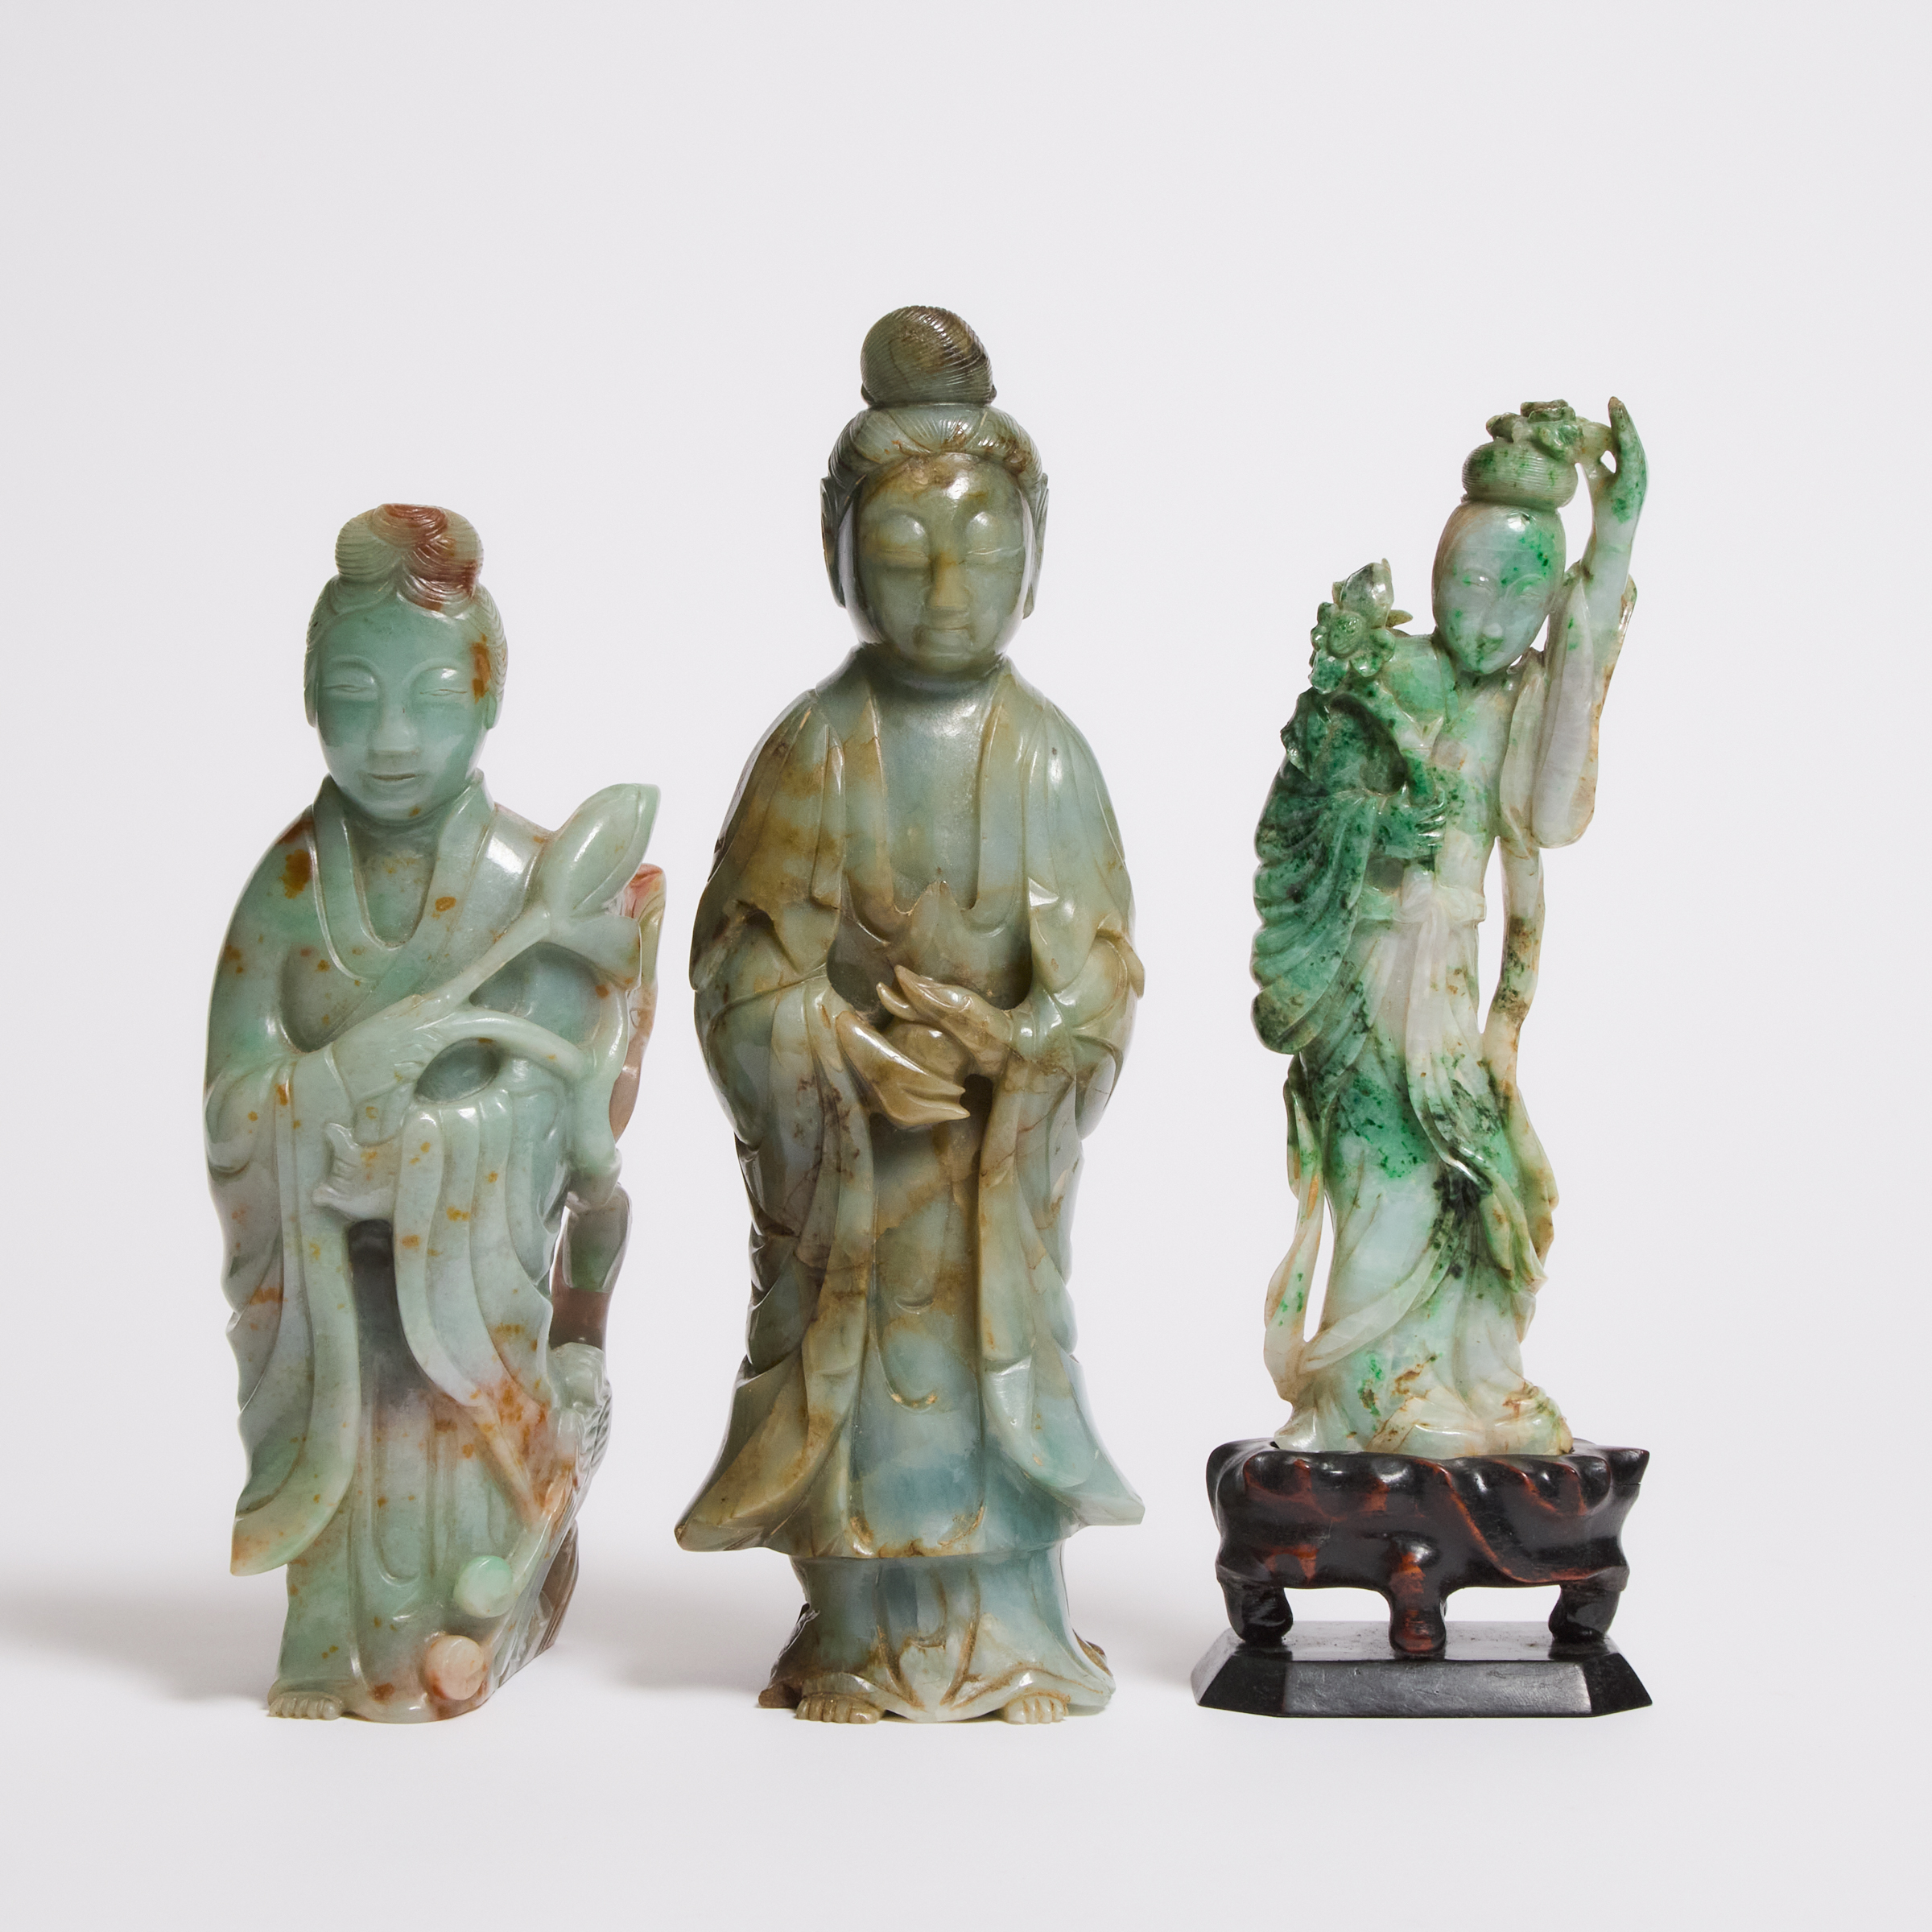 A Group of Three Jadeite Figures 2fb0648